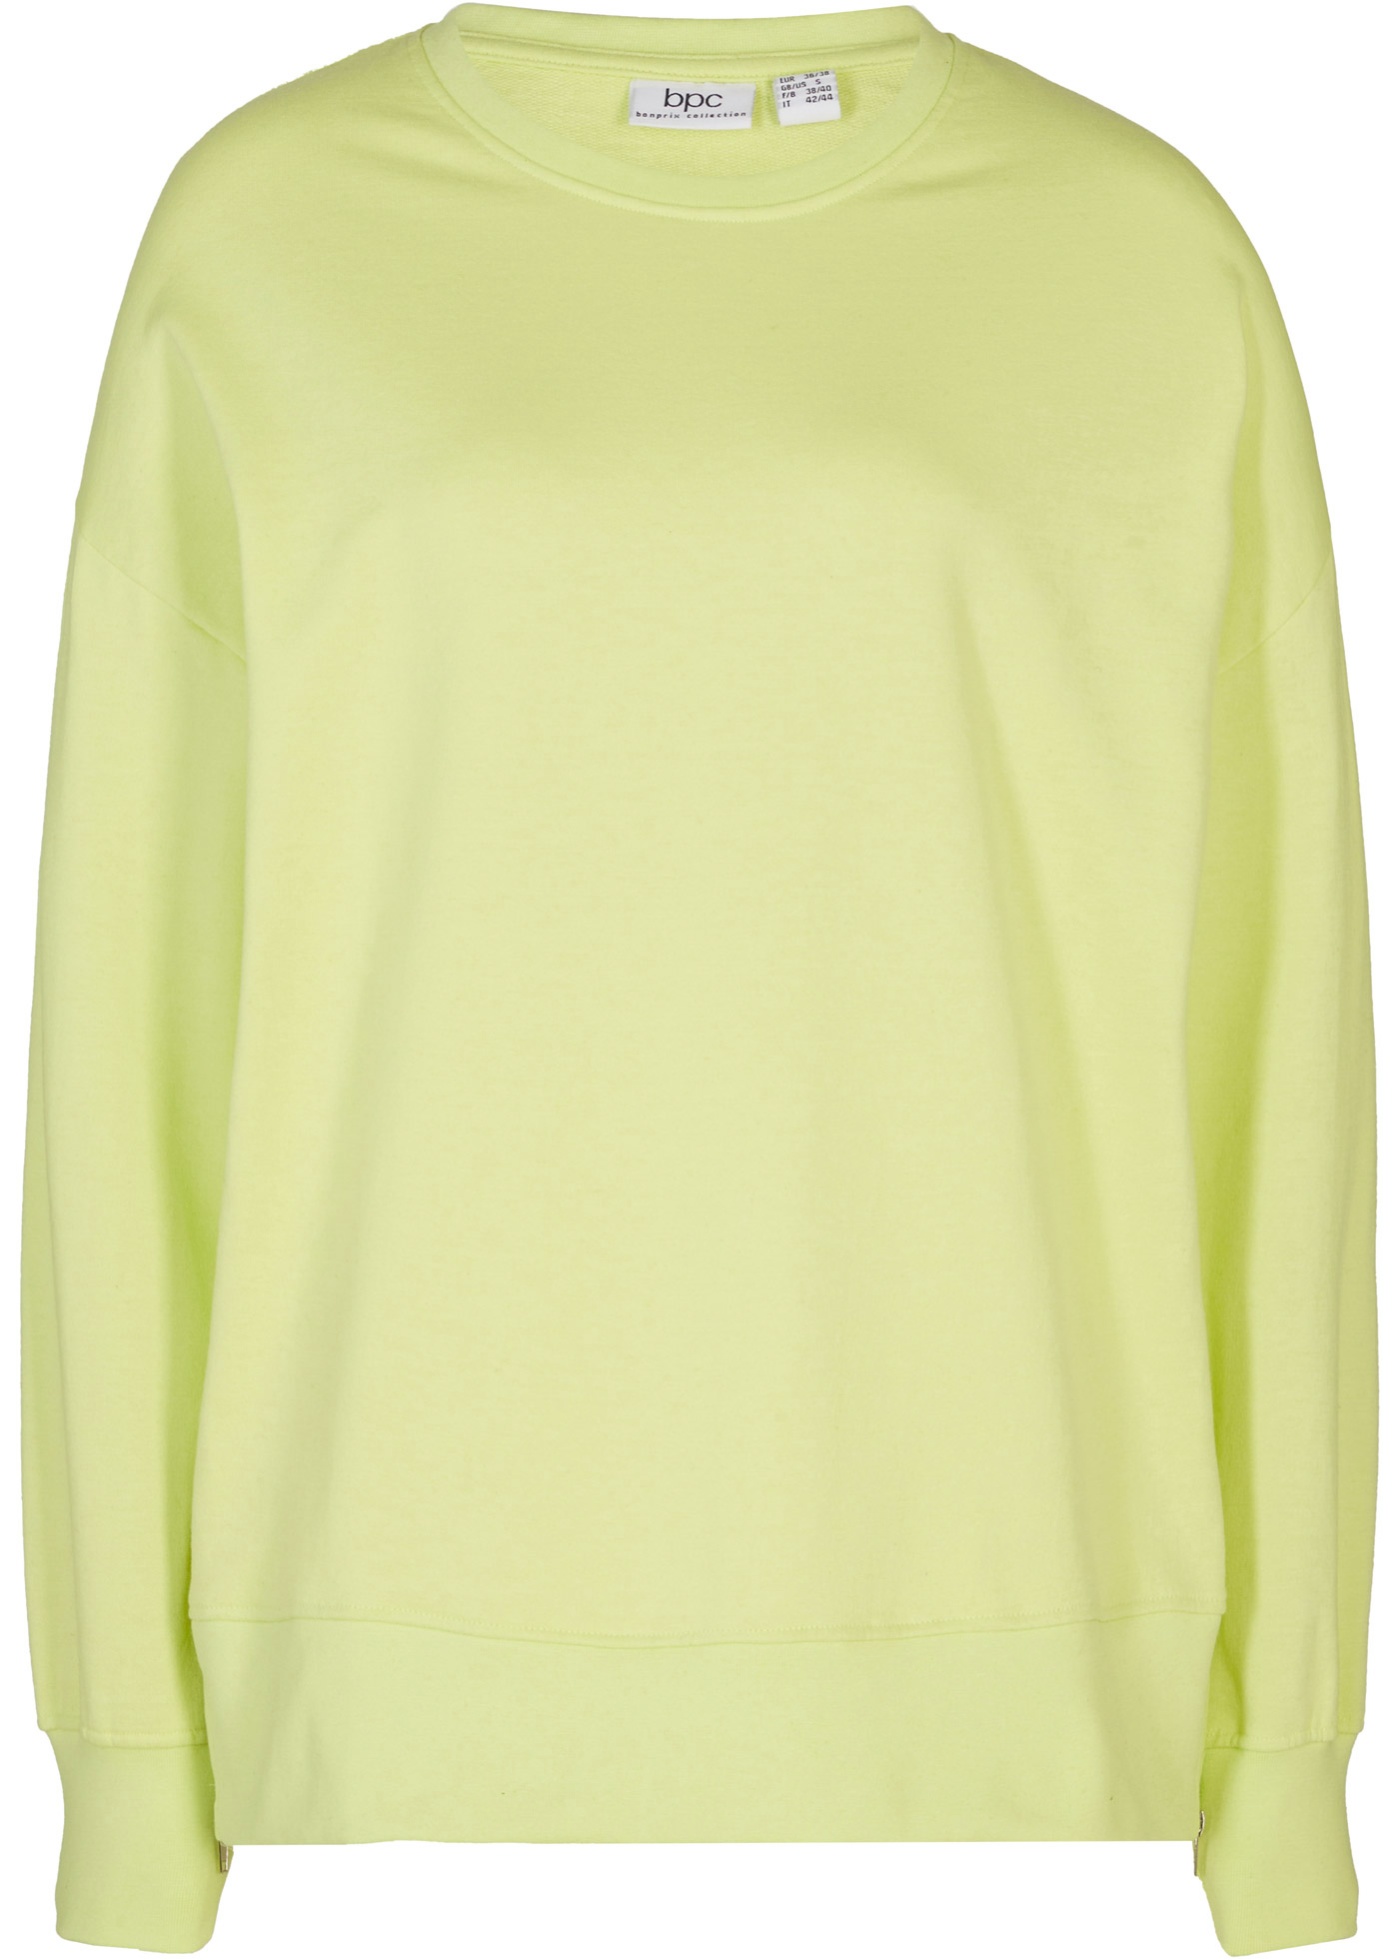 Bequemes Sweatshirt mit modischen Reißverschluss-Schlitzen an den Seiten. (96648395) in mintgrün